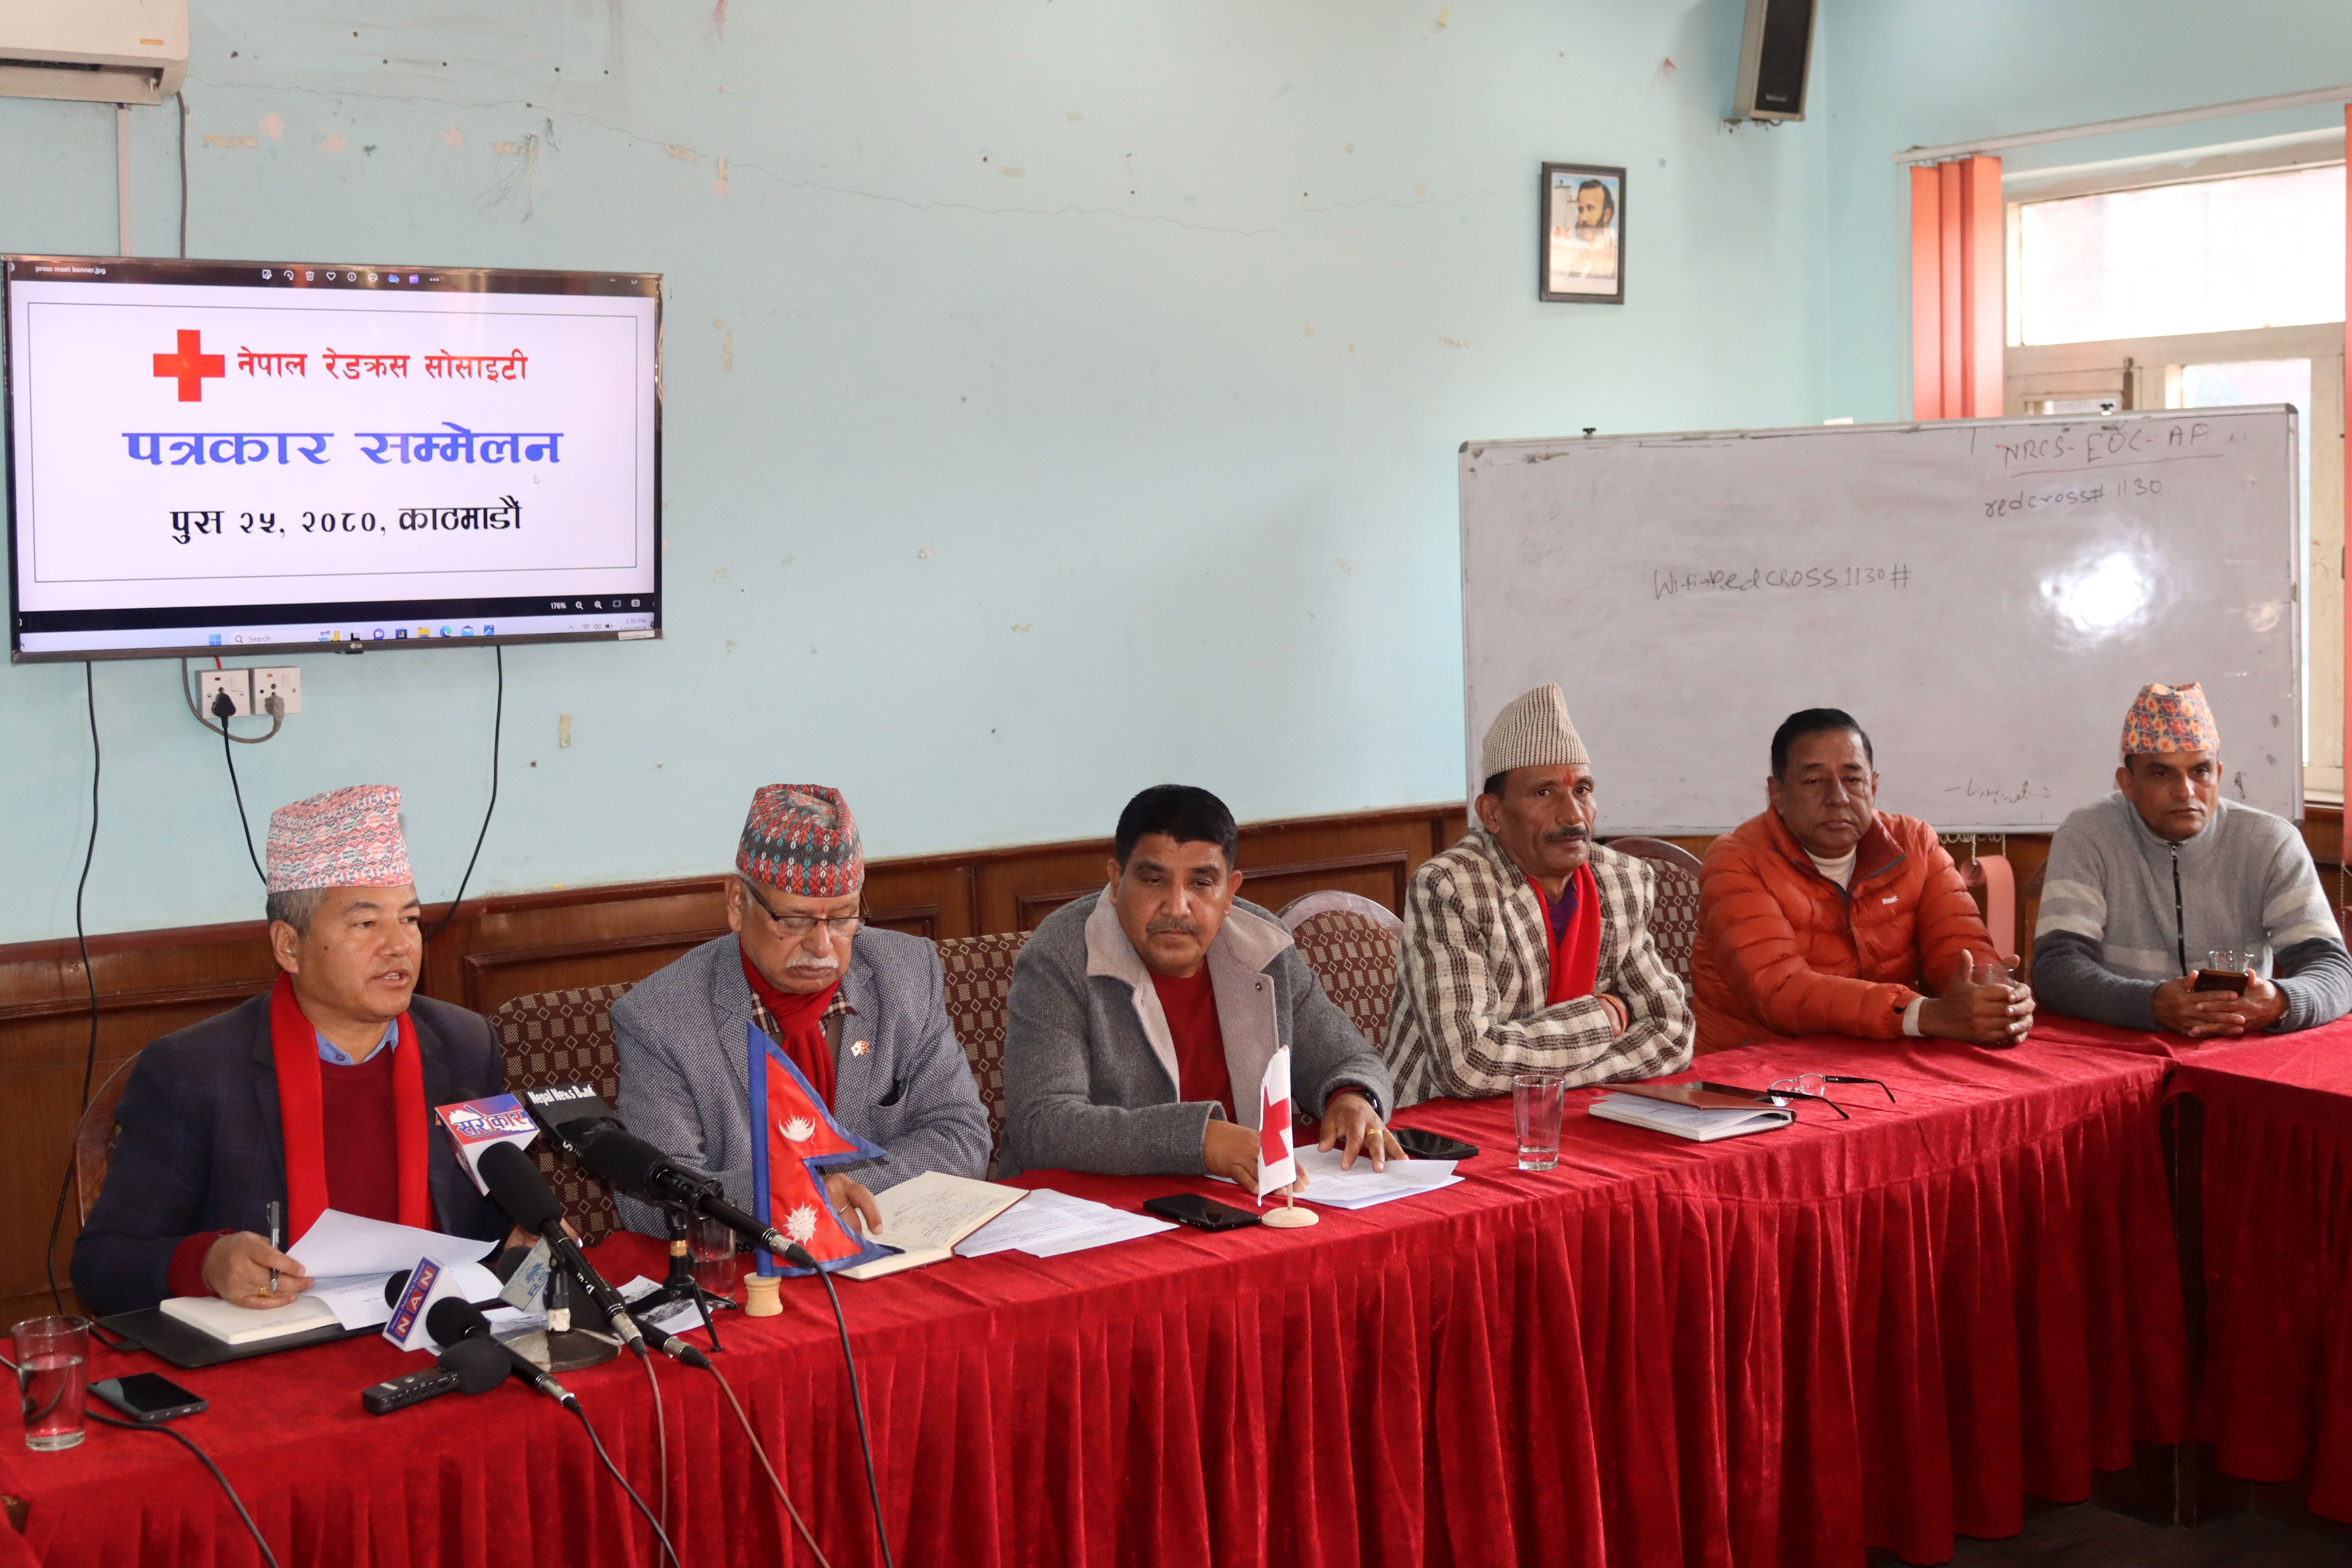 अन्तर्राष्ट्रिय रेडक्रसको मान्यता कायमै छ : नेपाल रेडक्रस सोसाइटी